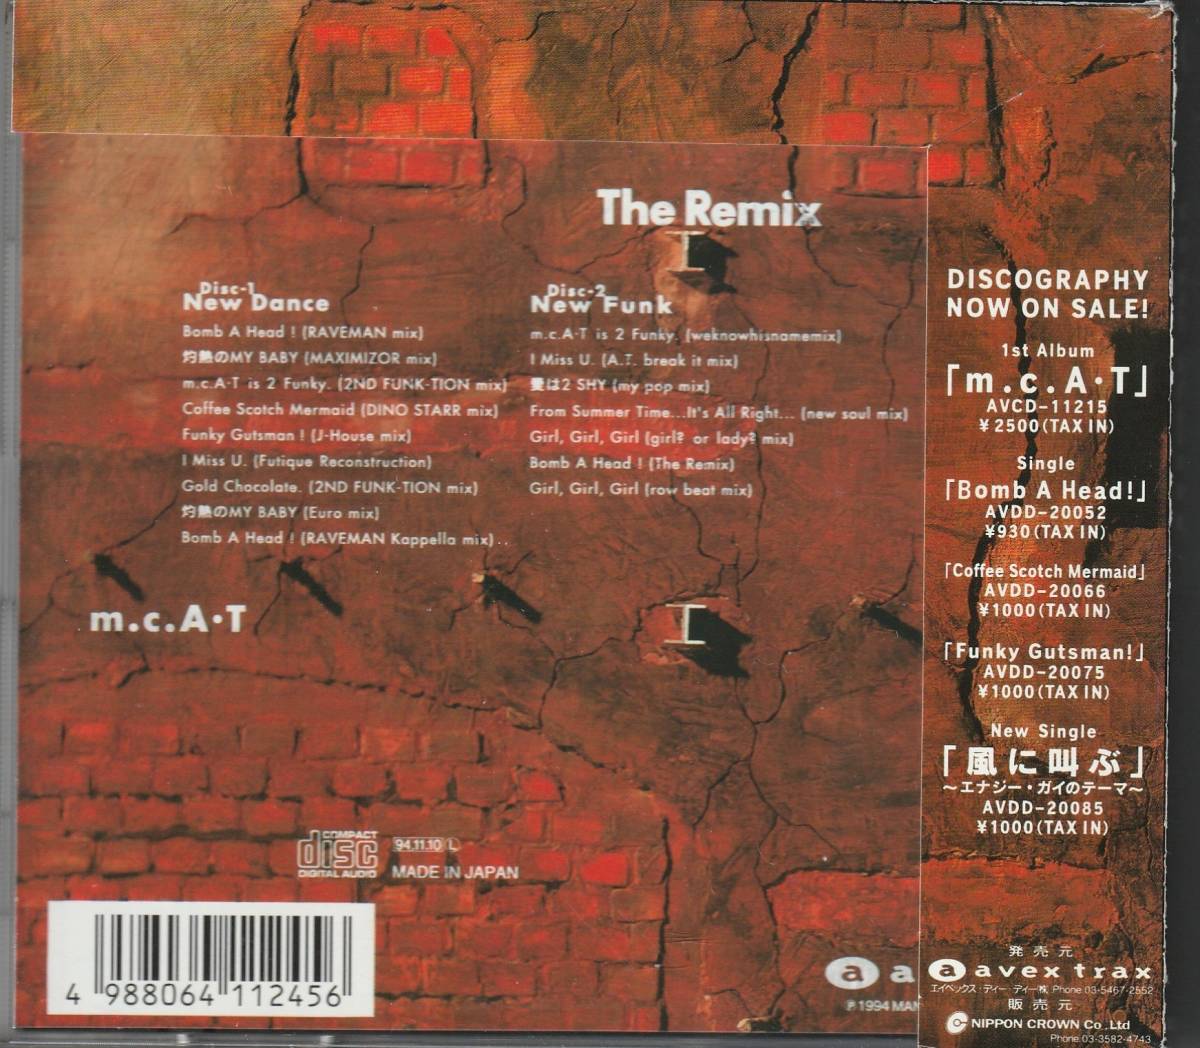 ★1994年リリース【m.c.AT / The Remix】★大ヒット曲「ボンバ・ヘッド」を含む2枚組 マキシマイザー,レイヴマン等によるテクノ・ミックス_画像2